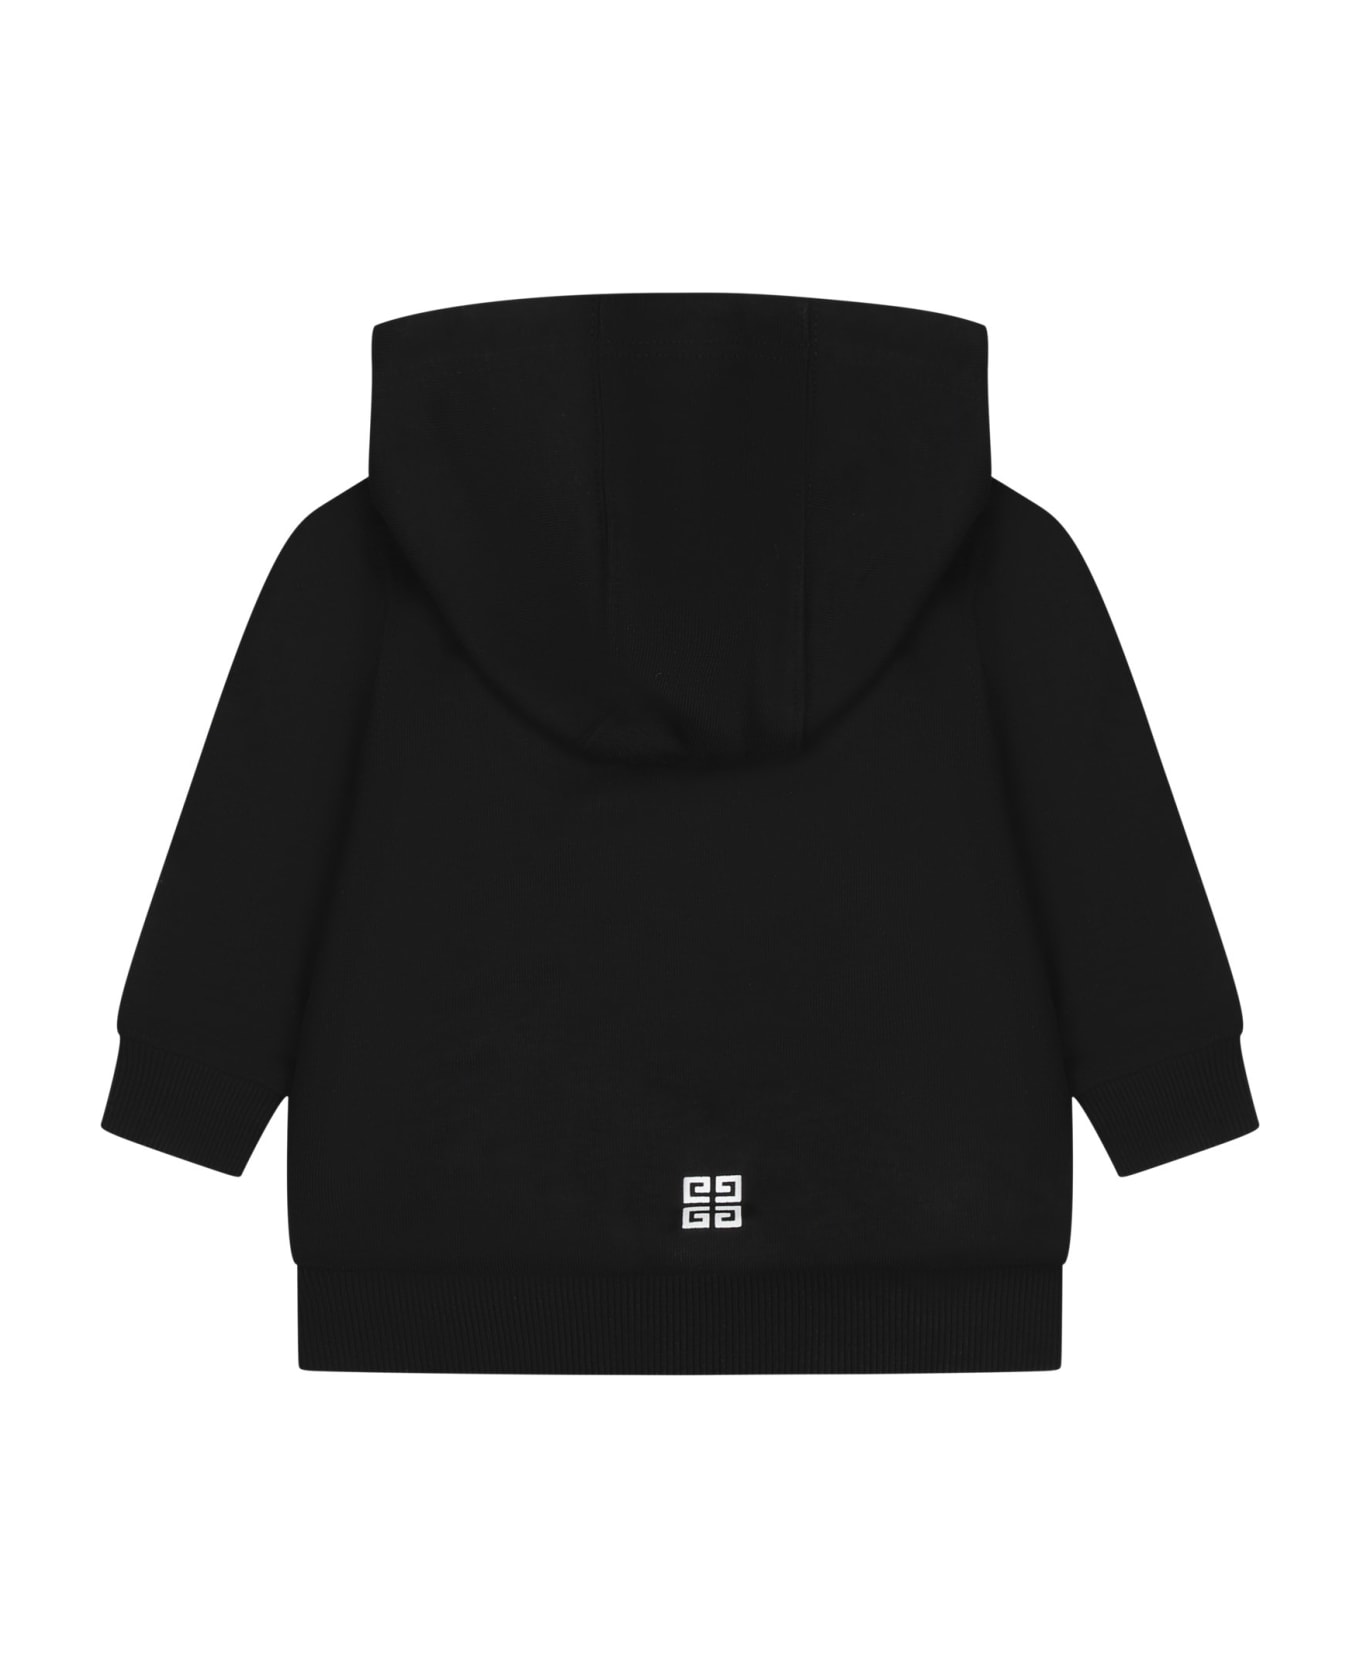 Givenchy Black Sweatshirt For Baby Boy With Logo - Black ニットウェア＆スウェットシャツ